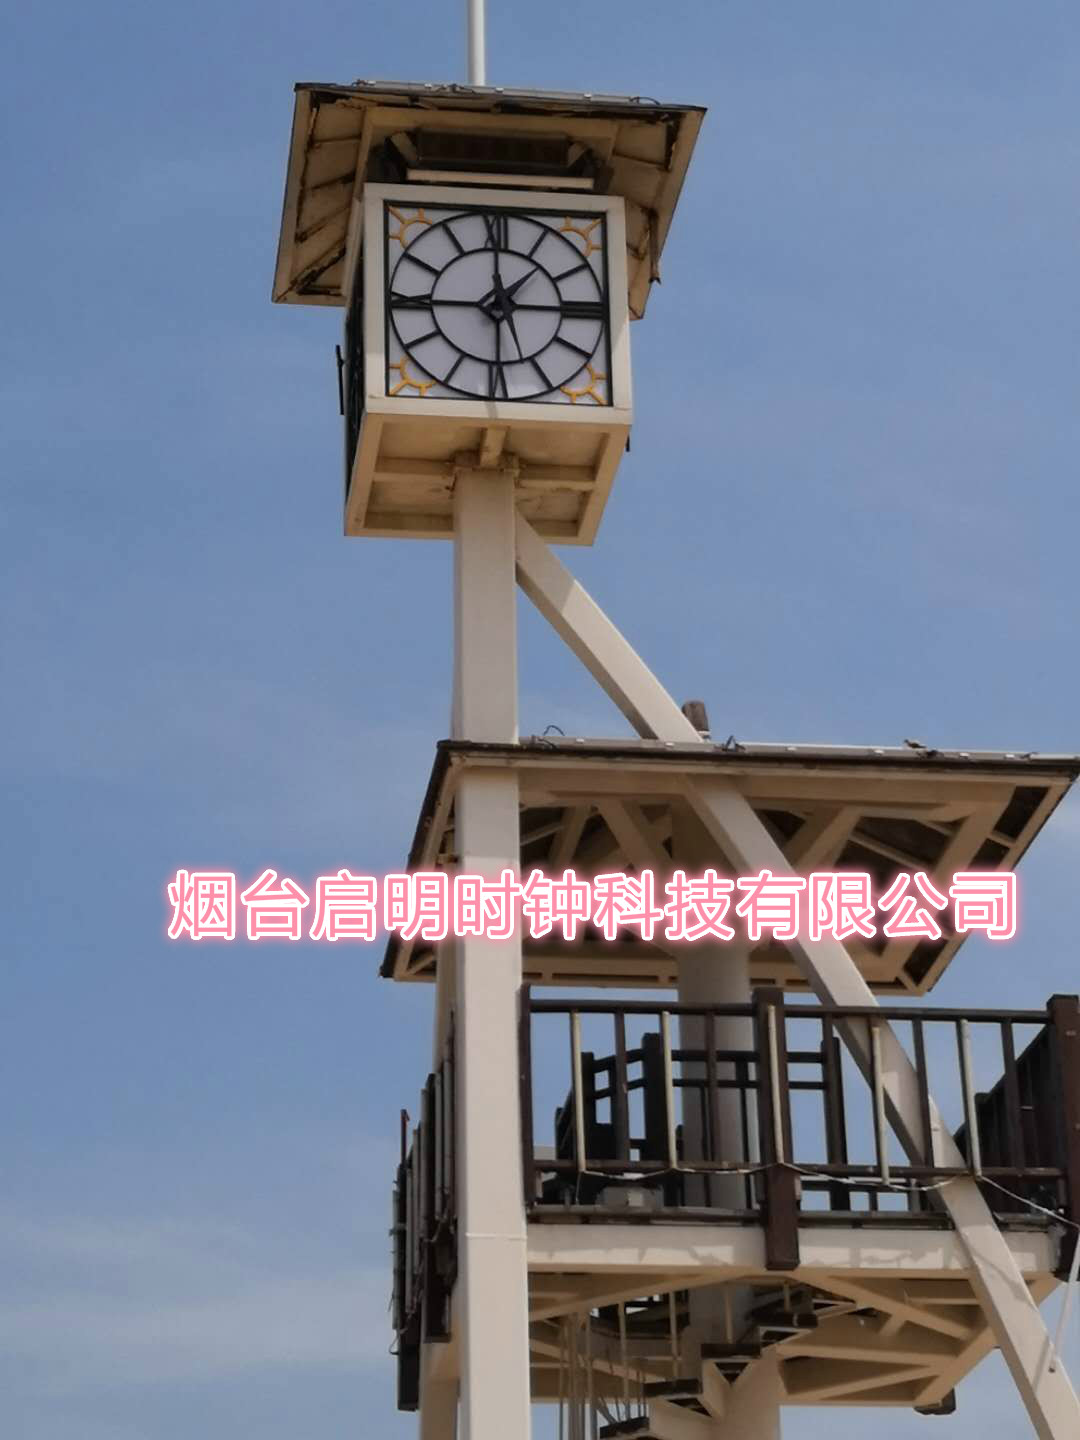 塔楼大钟学校塔钟大钟厂家直供价格优惠质量保证优选烟台启明时钟